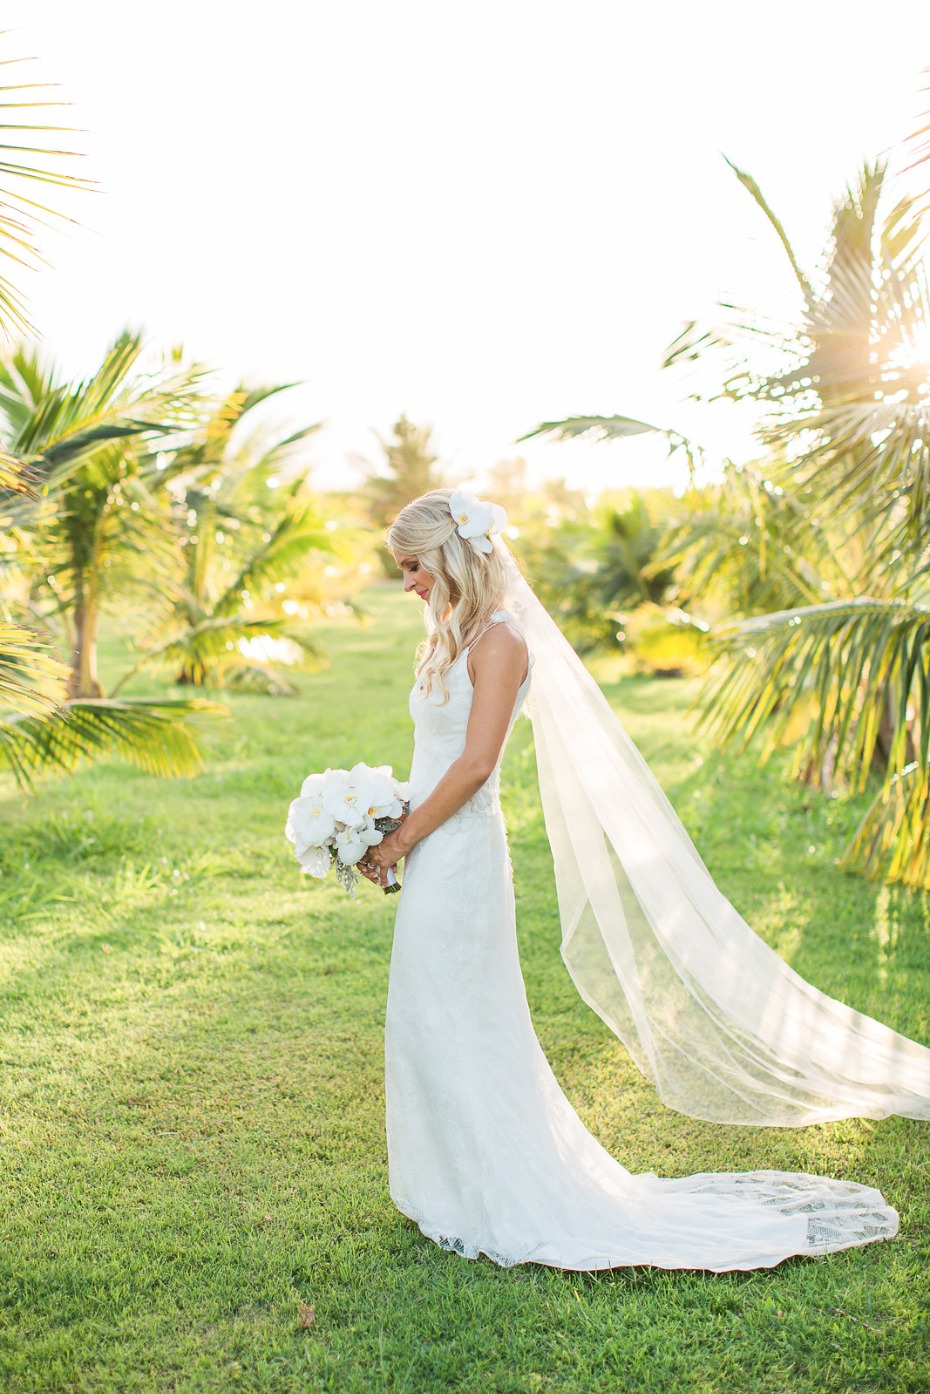 Kauai bride amongst the palm trees